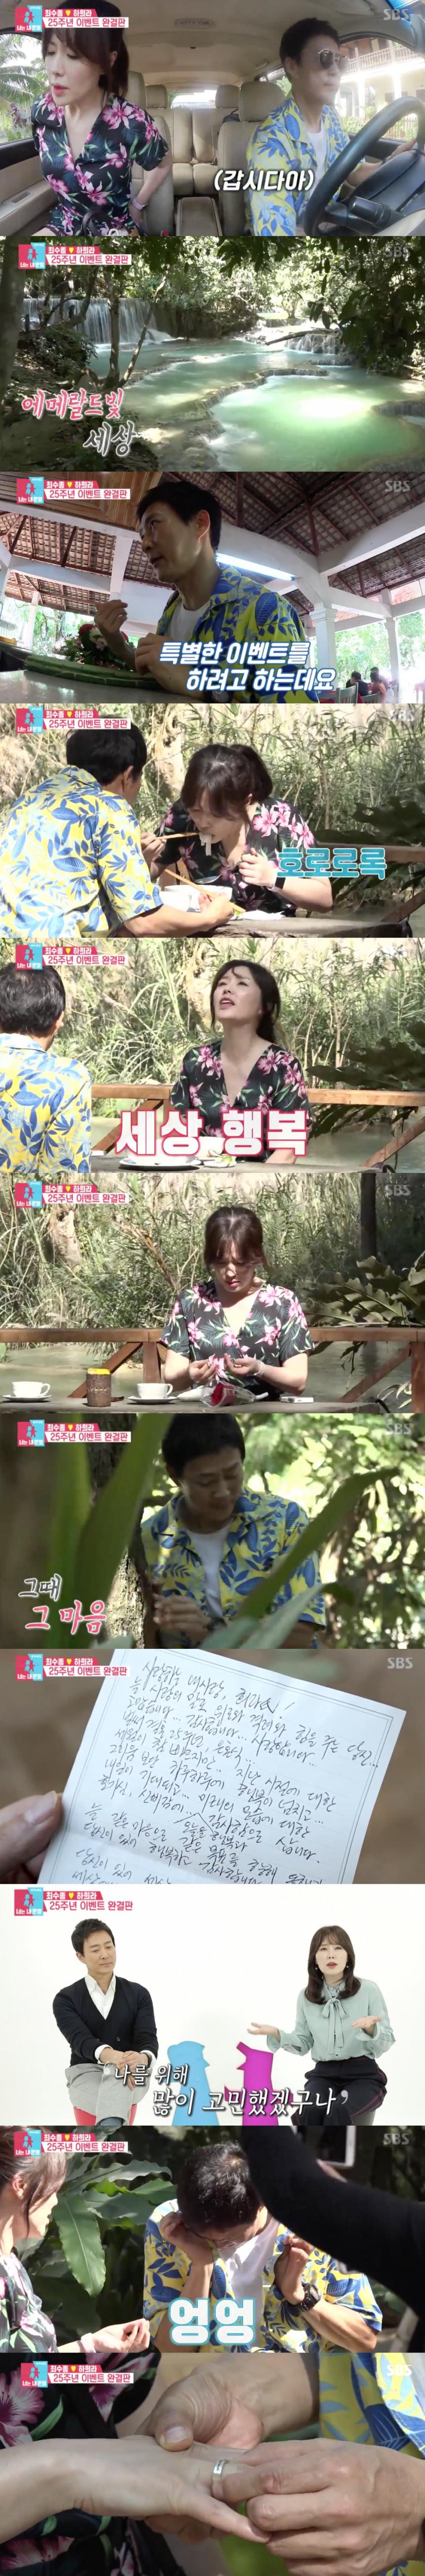 SBS ‘동상이몽 시즌2’ 방송캡쳐